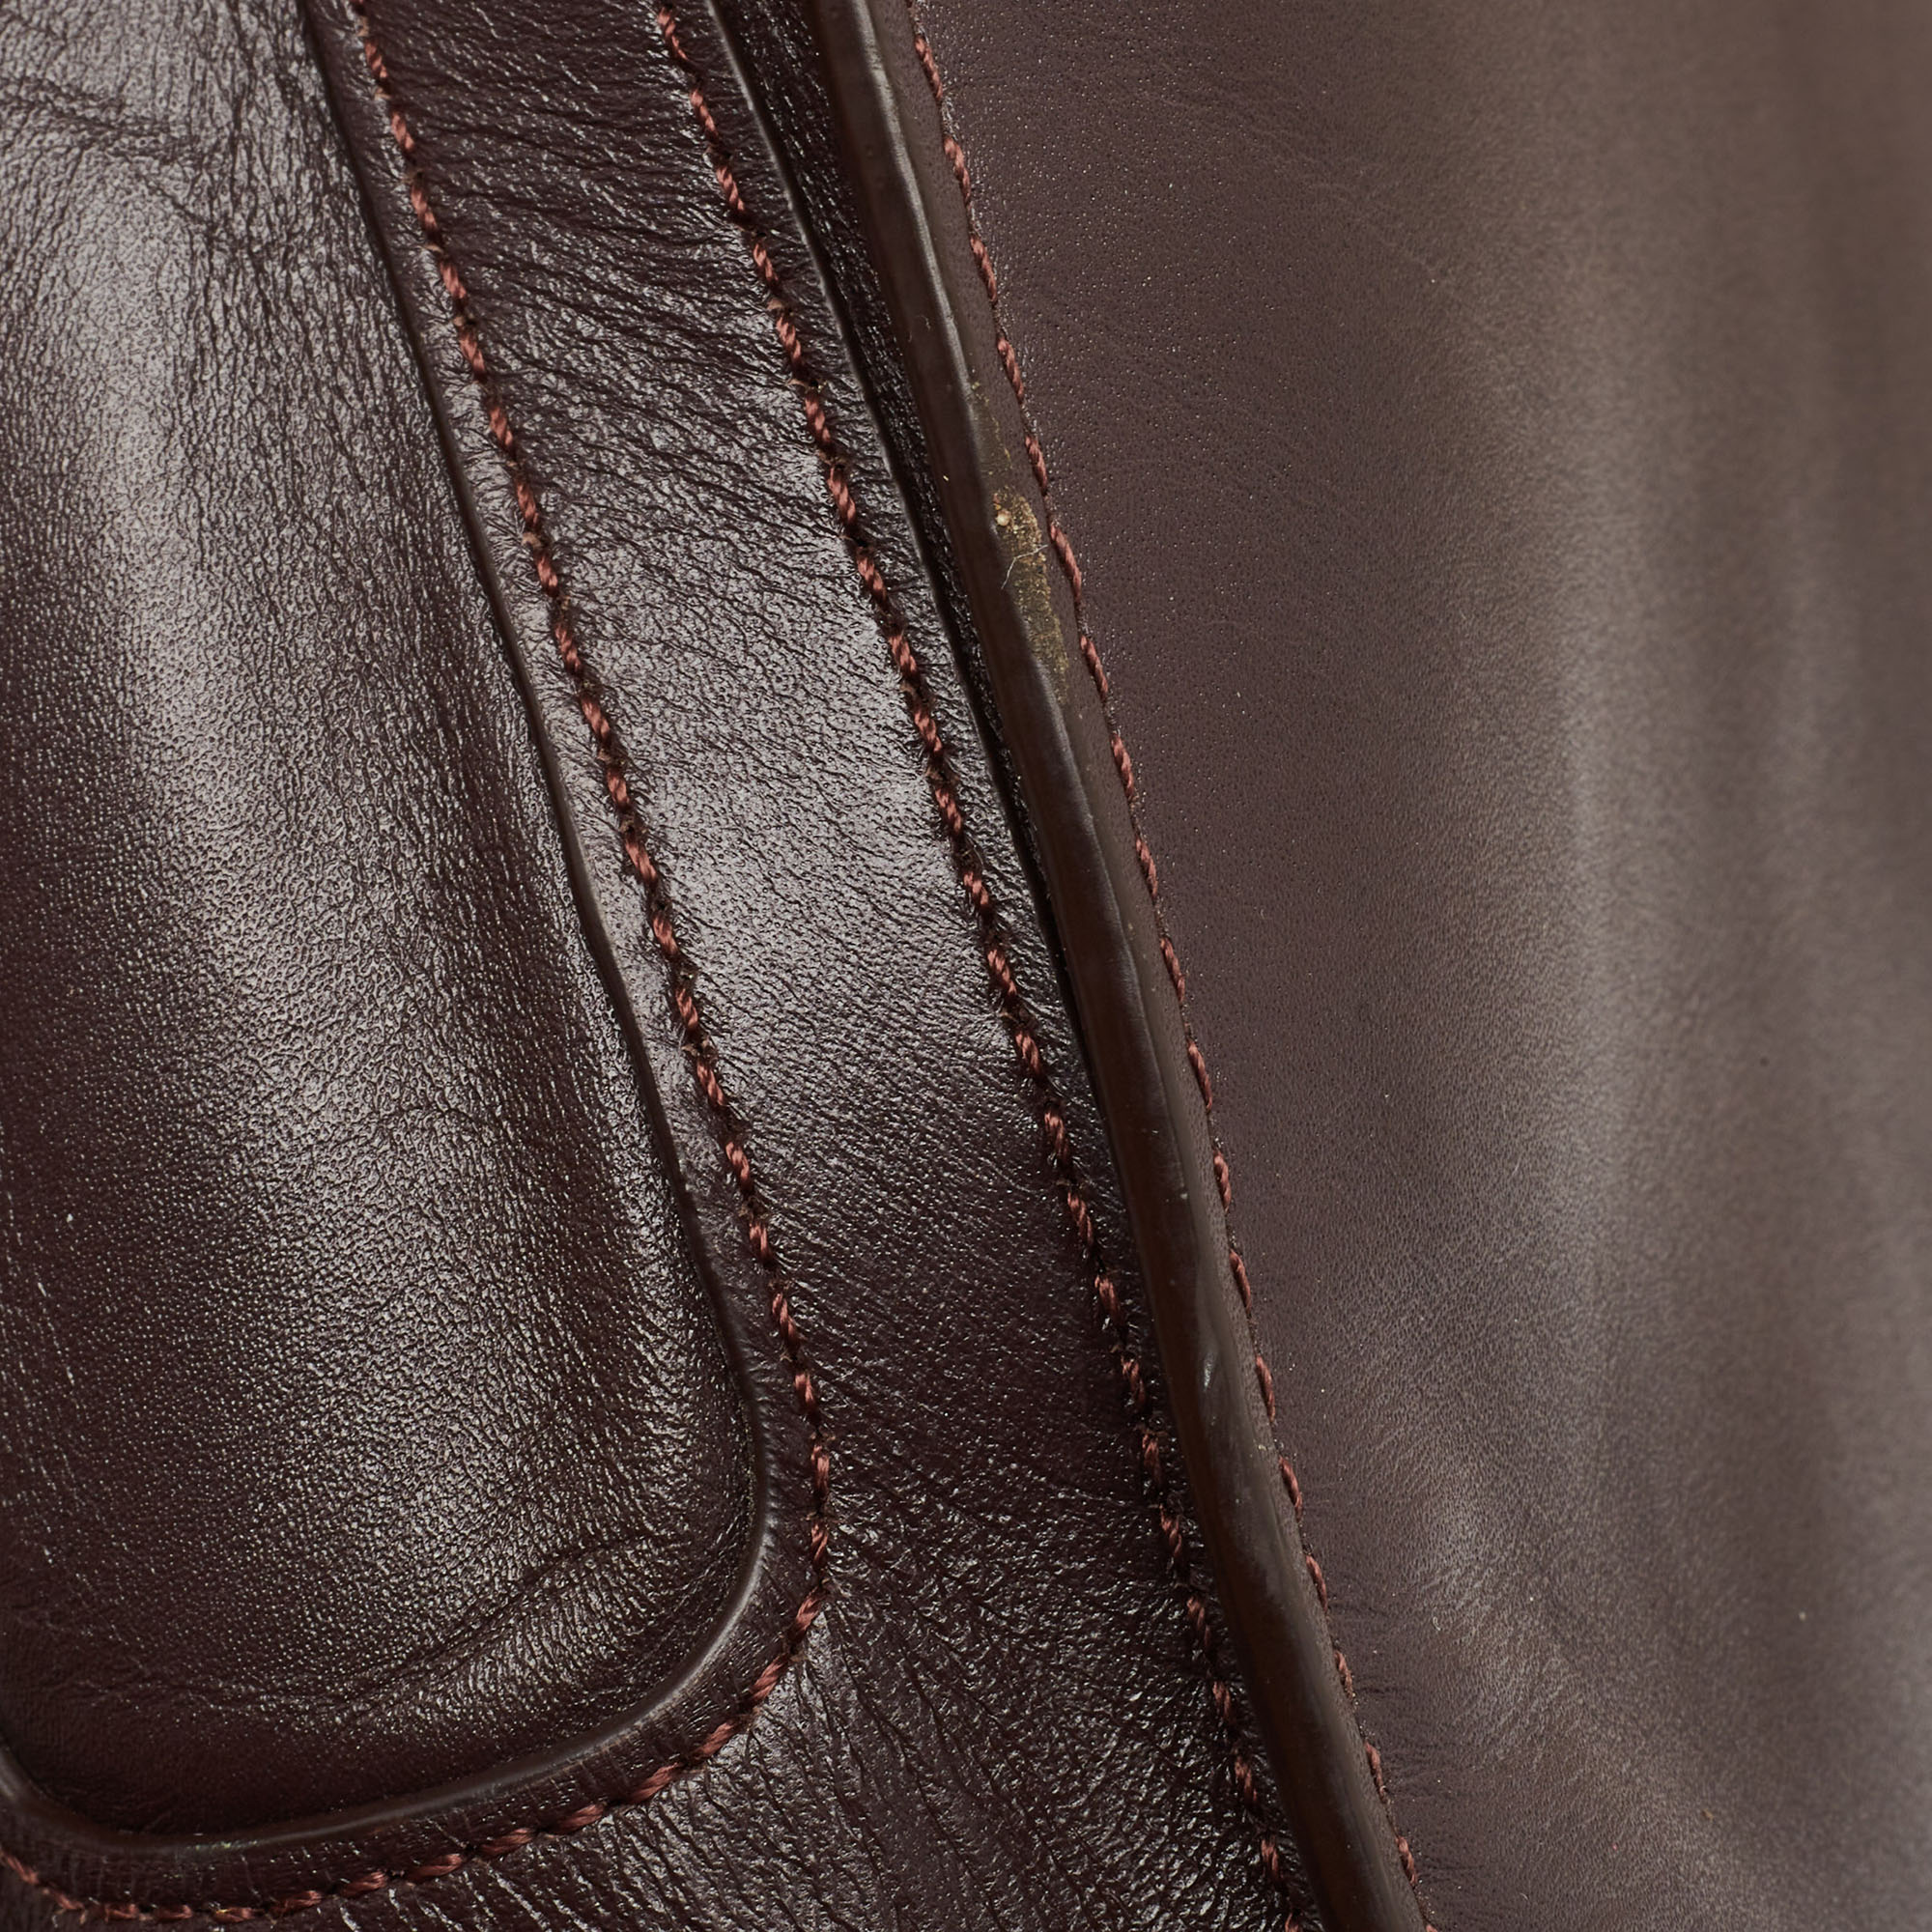 Aigner Burgundy Leather Turnlock Flap Shoulder Bag